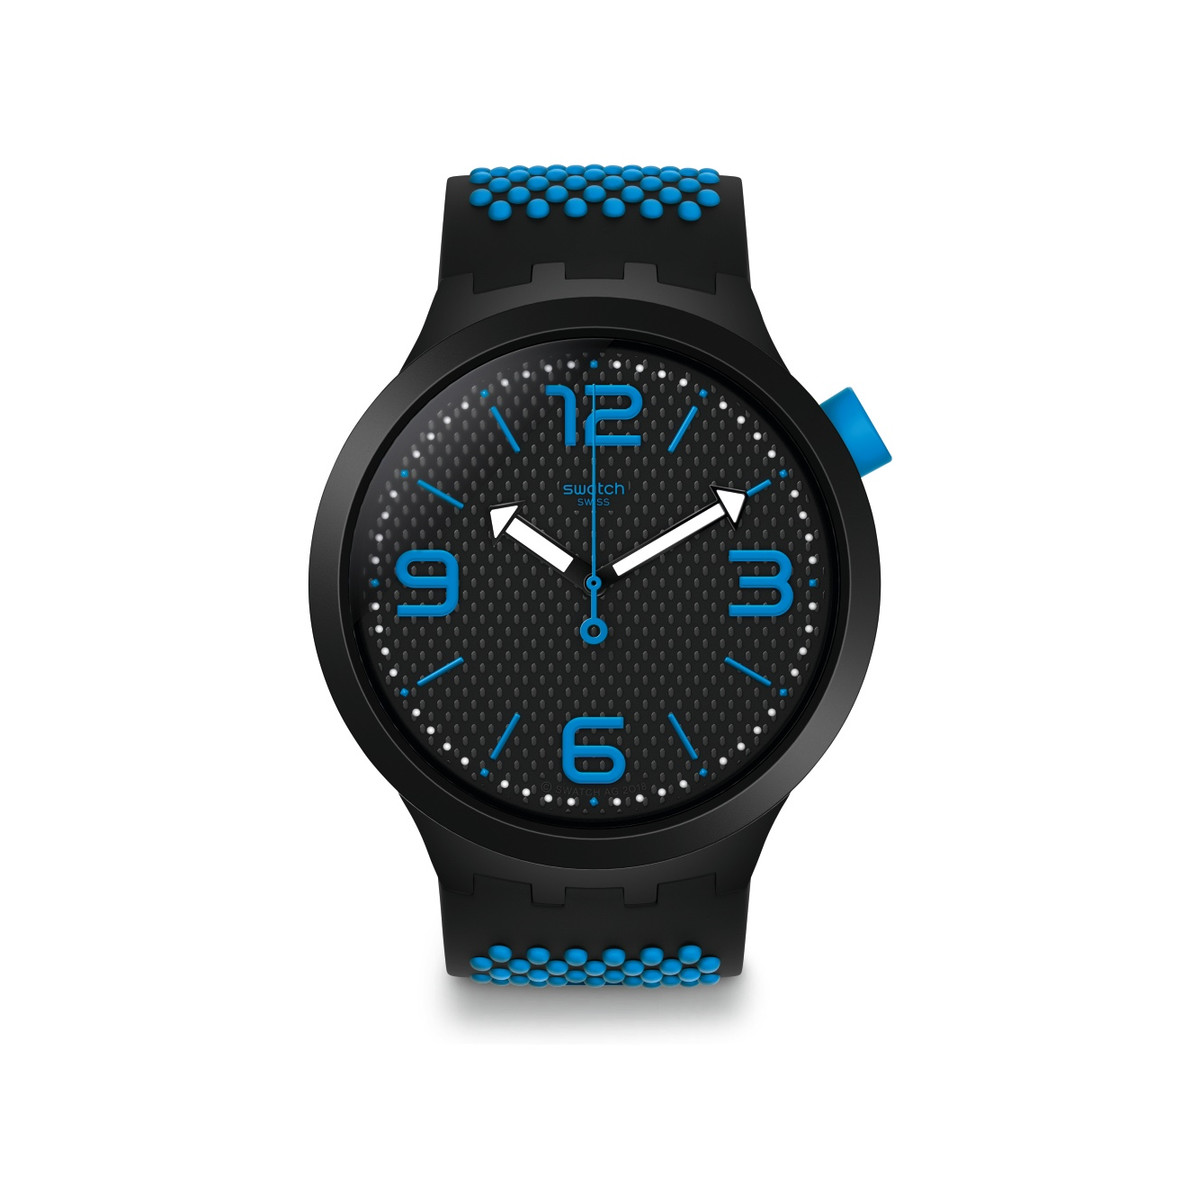 Montre Swatch mixte plastique silicone noir bleu